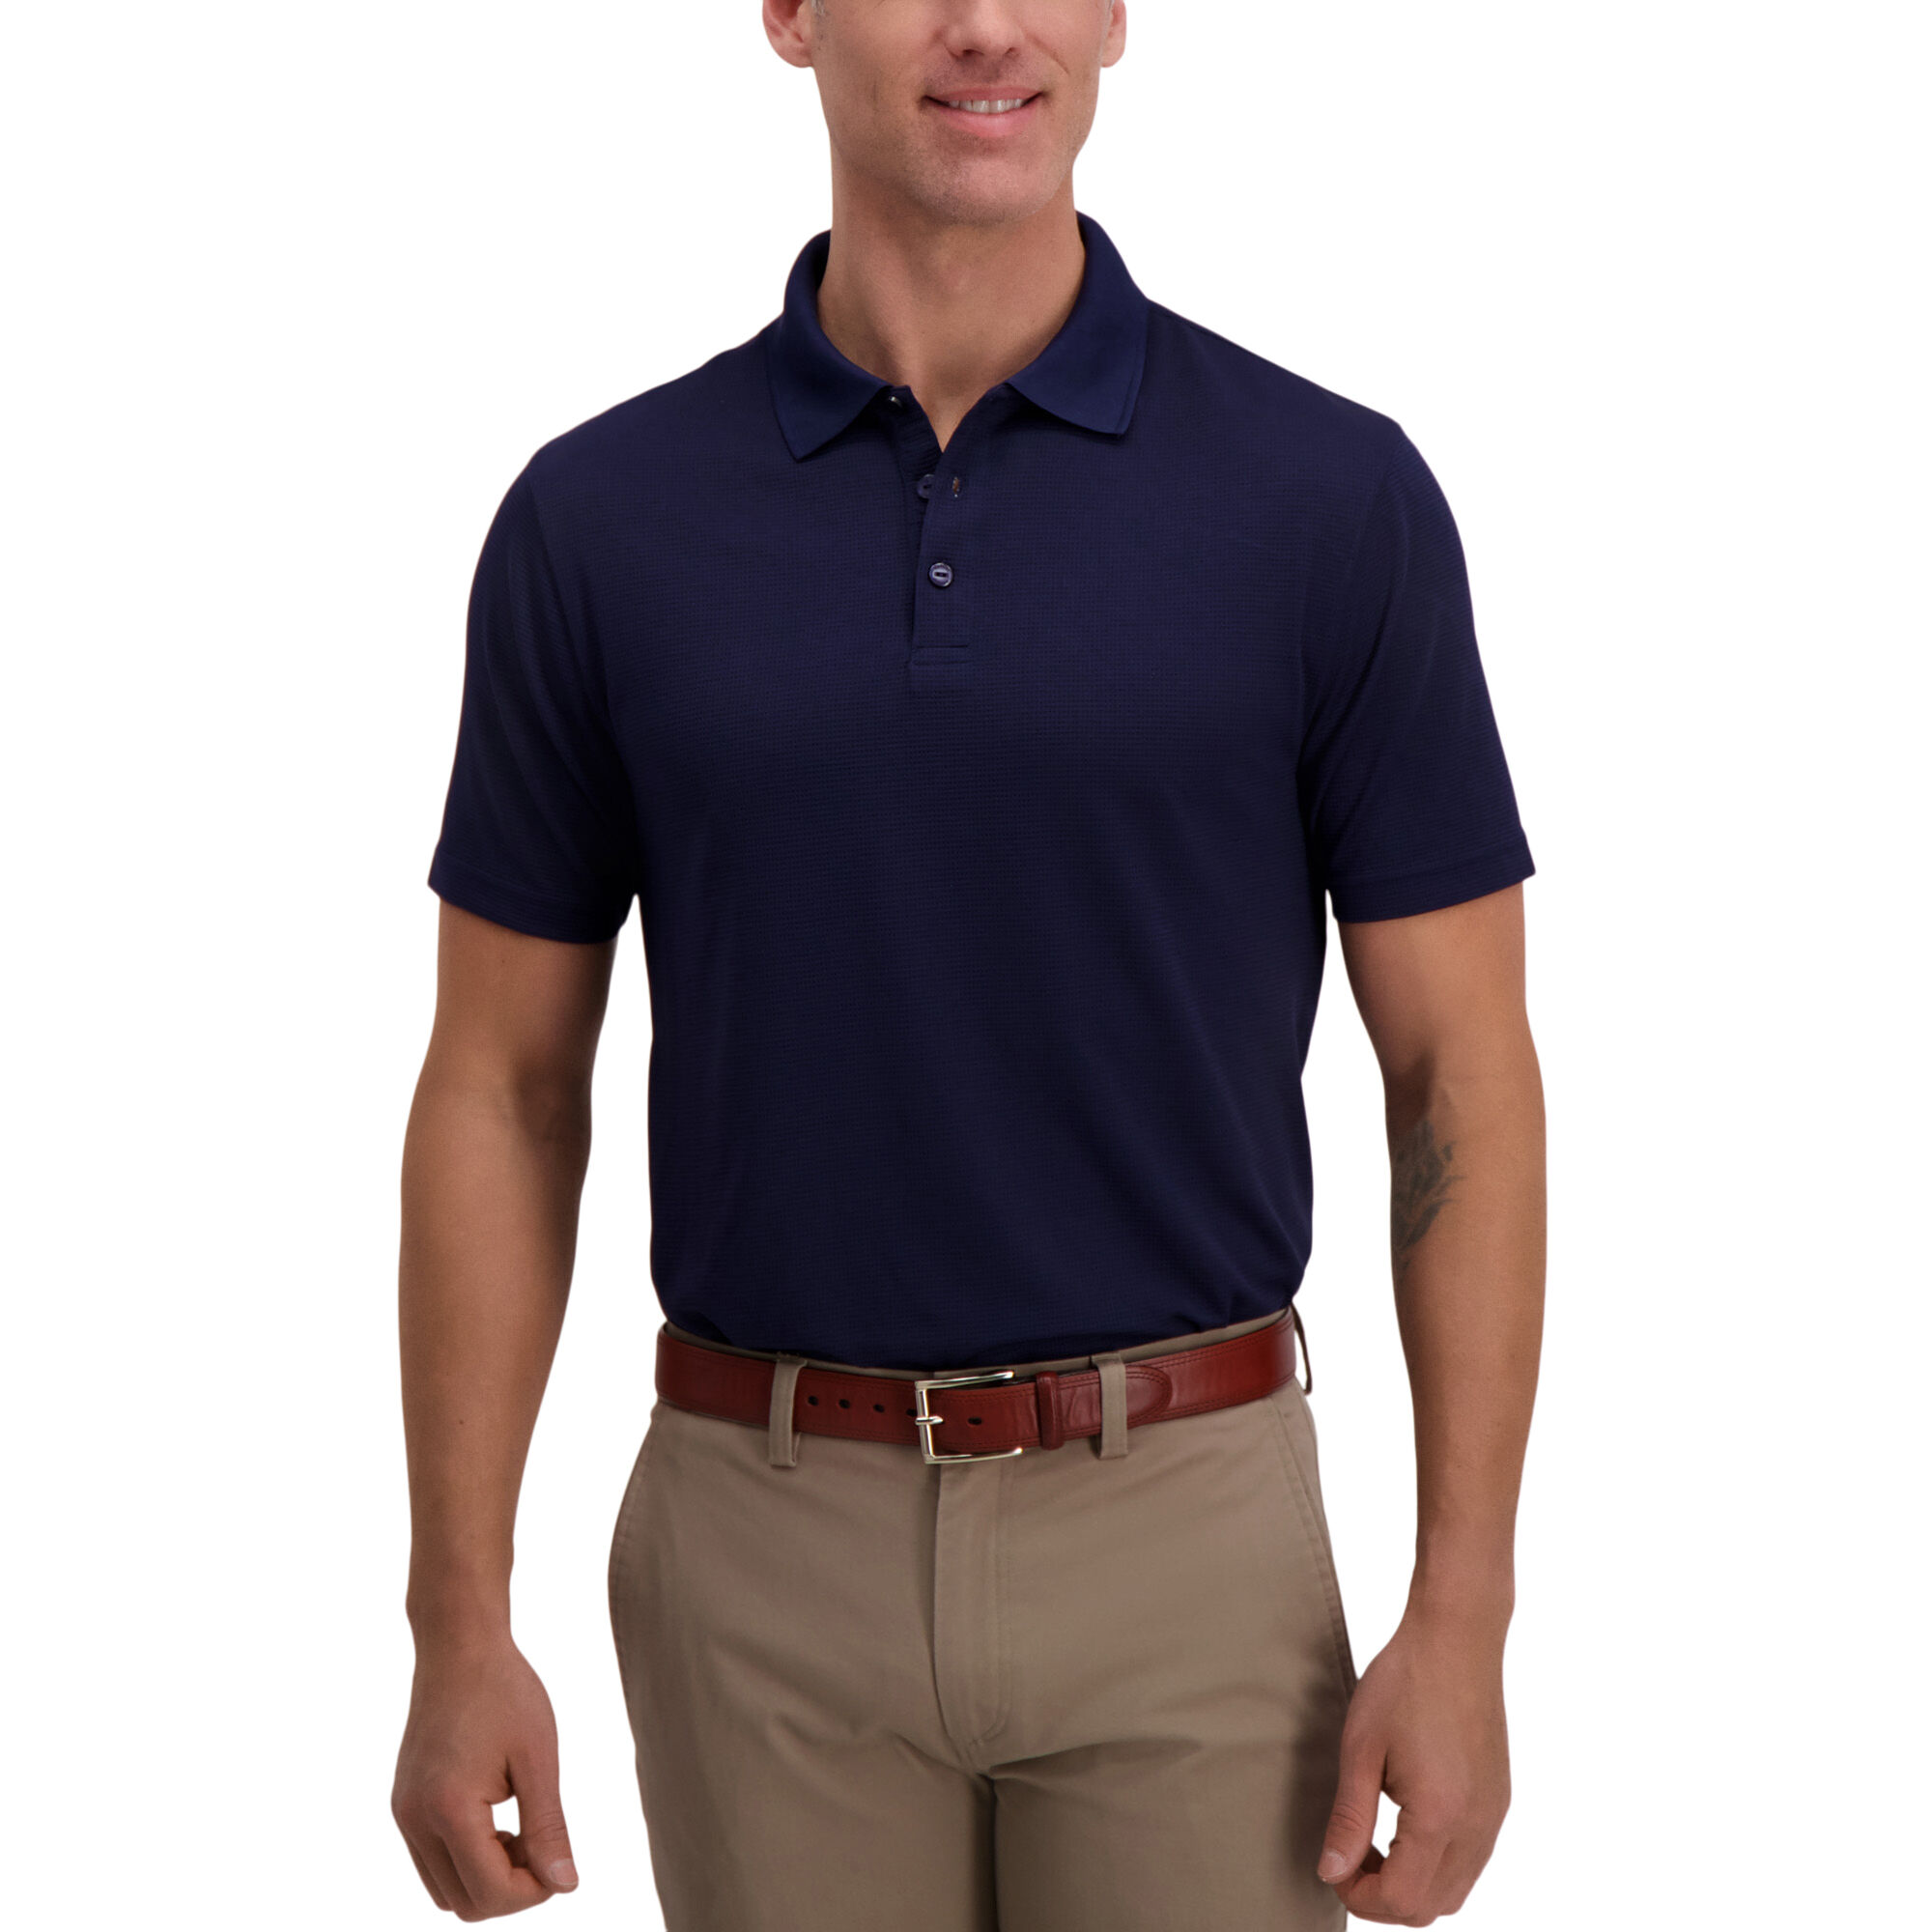 Haggar Cool 18 Golf Polo Peacoat (027197 Clothing Shirts & Tops) photo